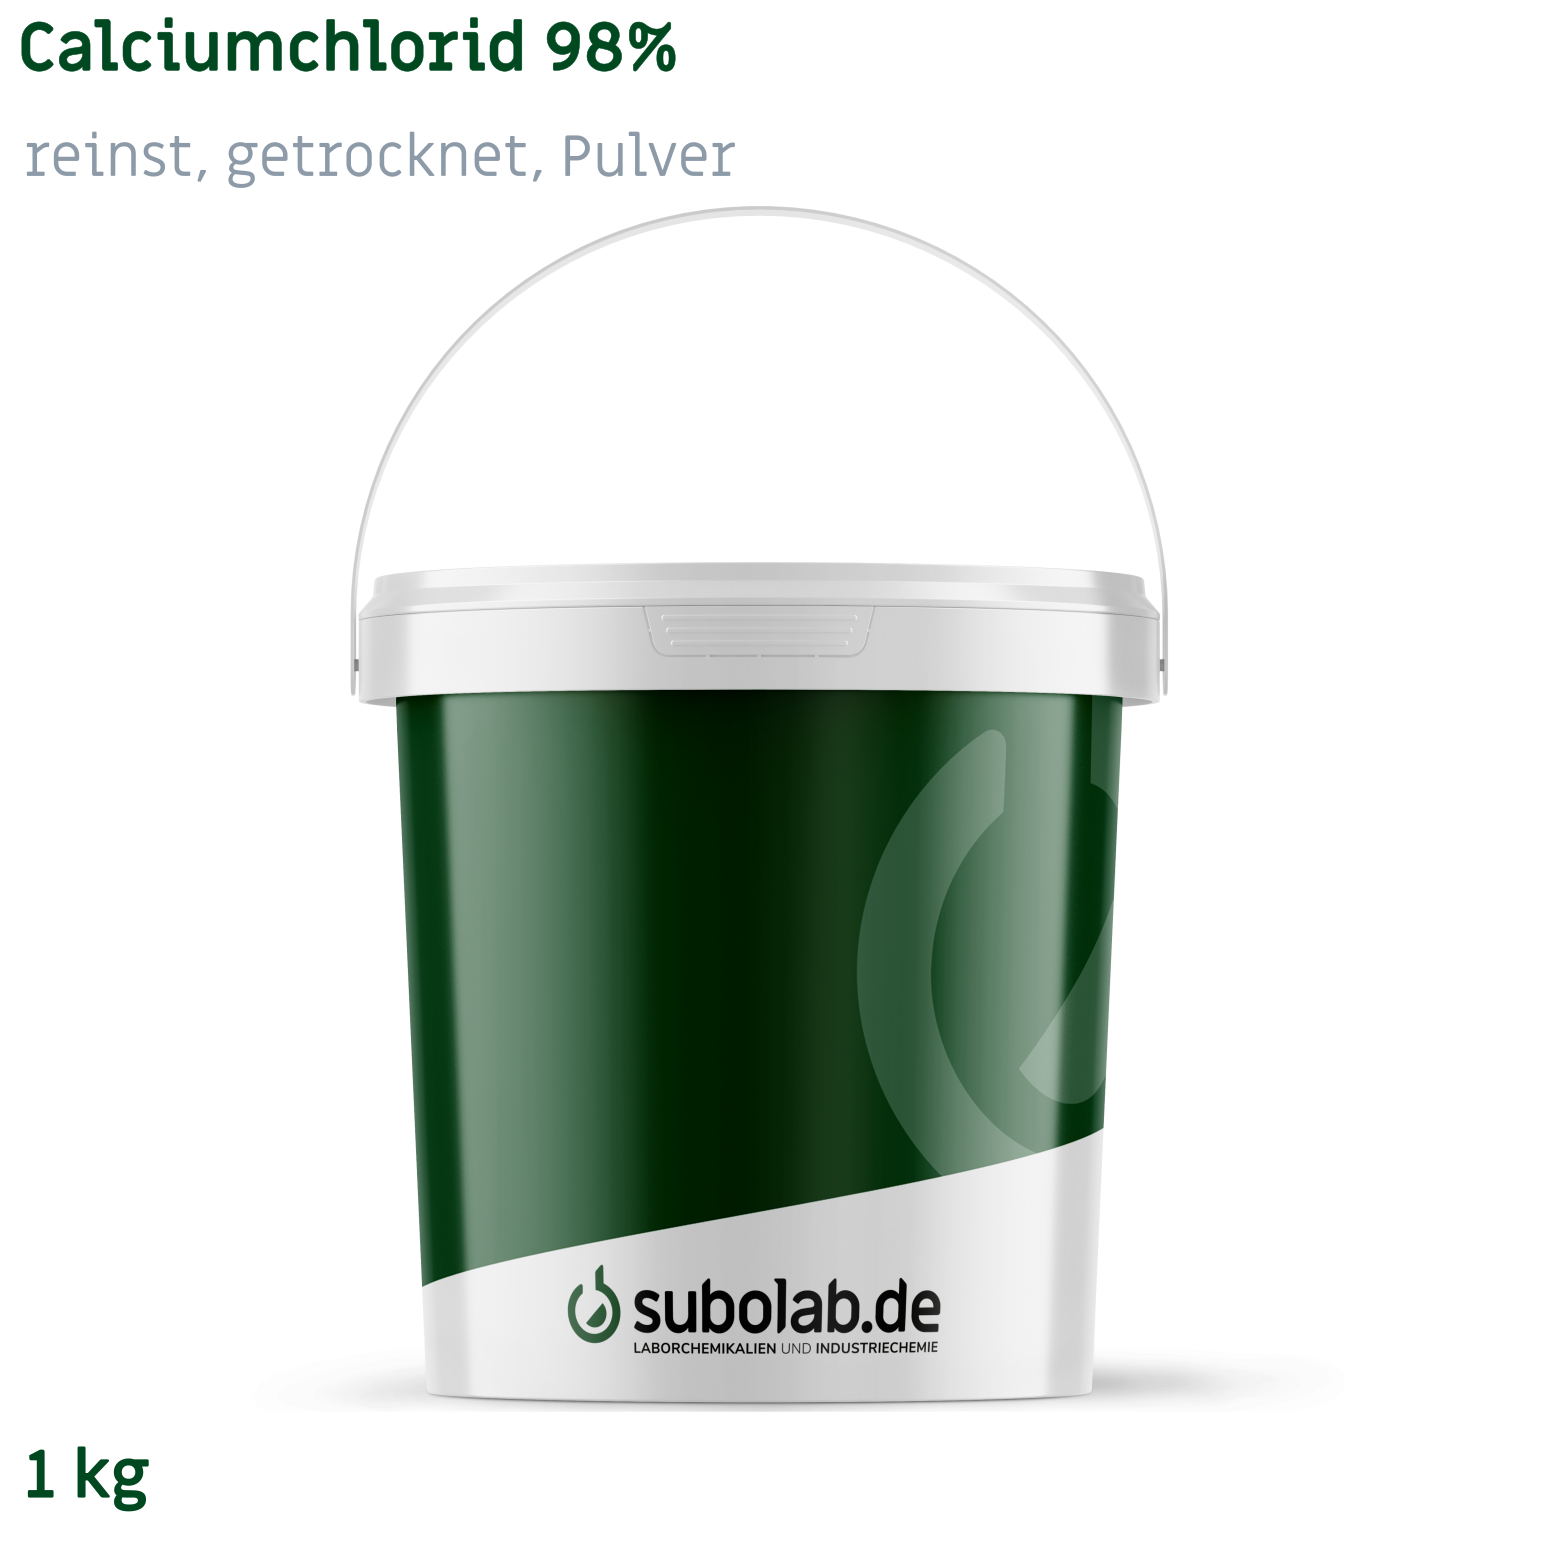 Bild von Calciumchlorid 98% reinst, getrocknet, Pulver (1 kg)